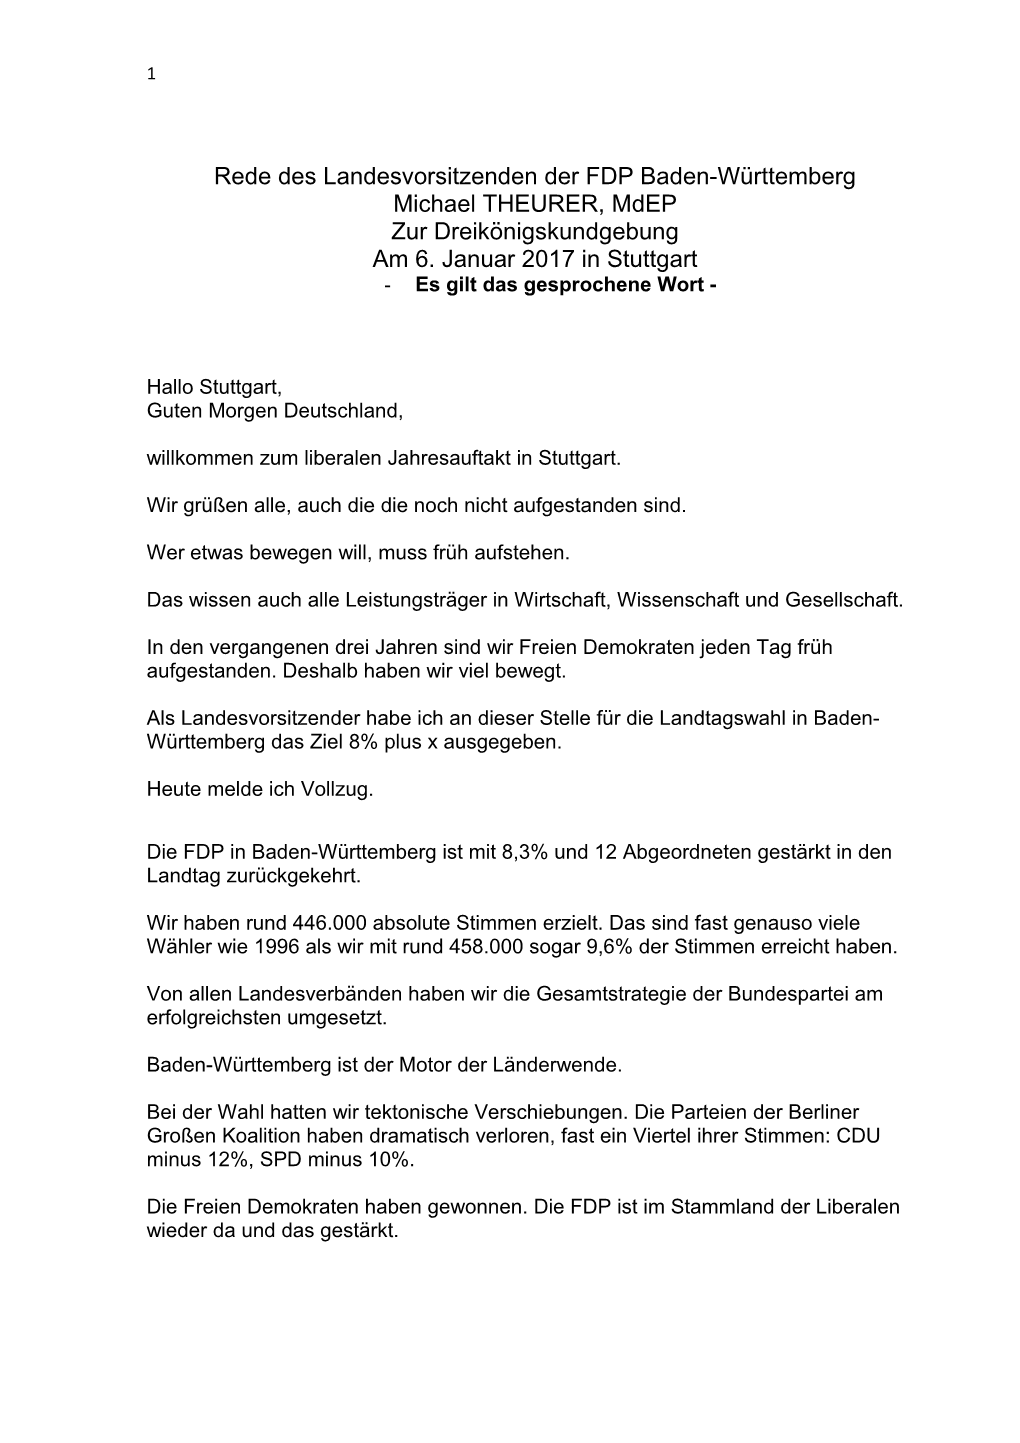 Rede Des Landesvorsitzenden Der FDP Baden-Württemberg Michael THEURER, Mdep Zur Dreikönigskundgebung Am 6